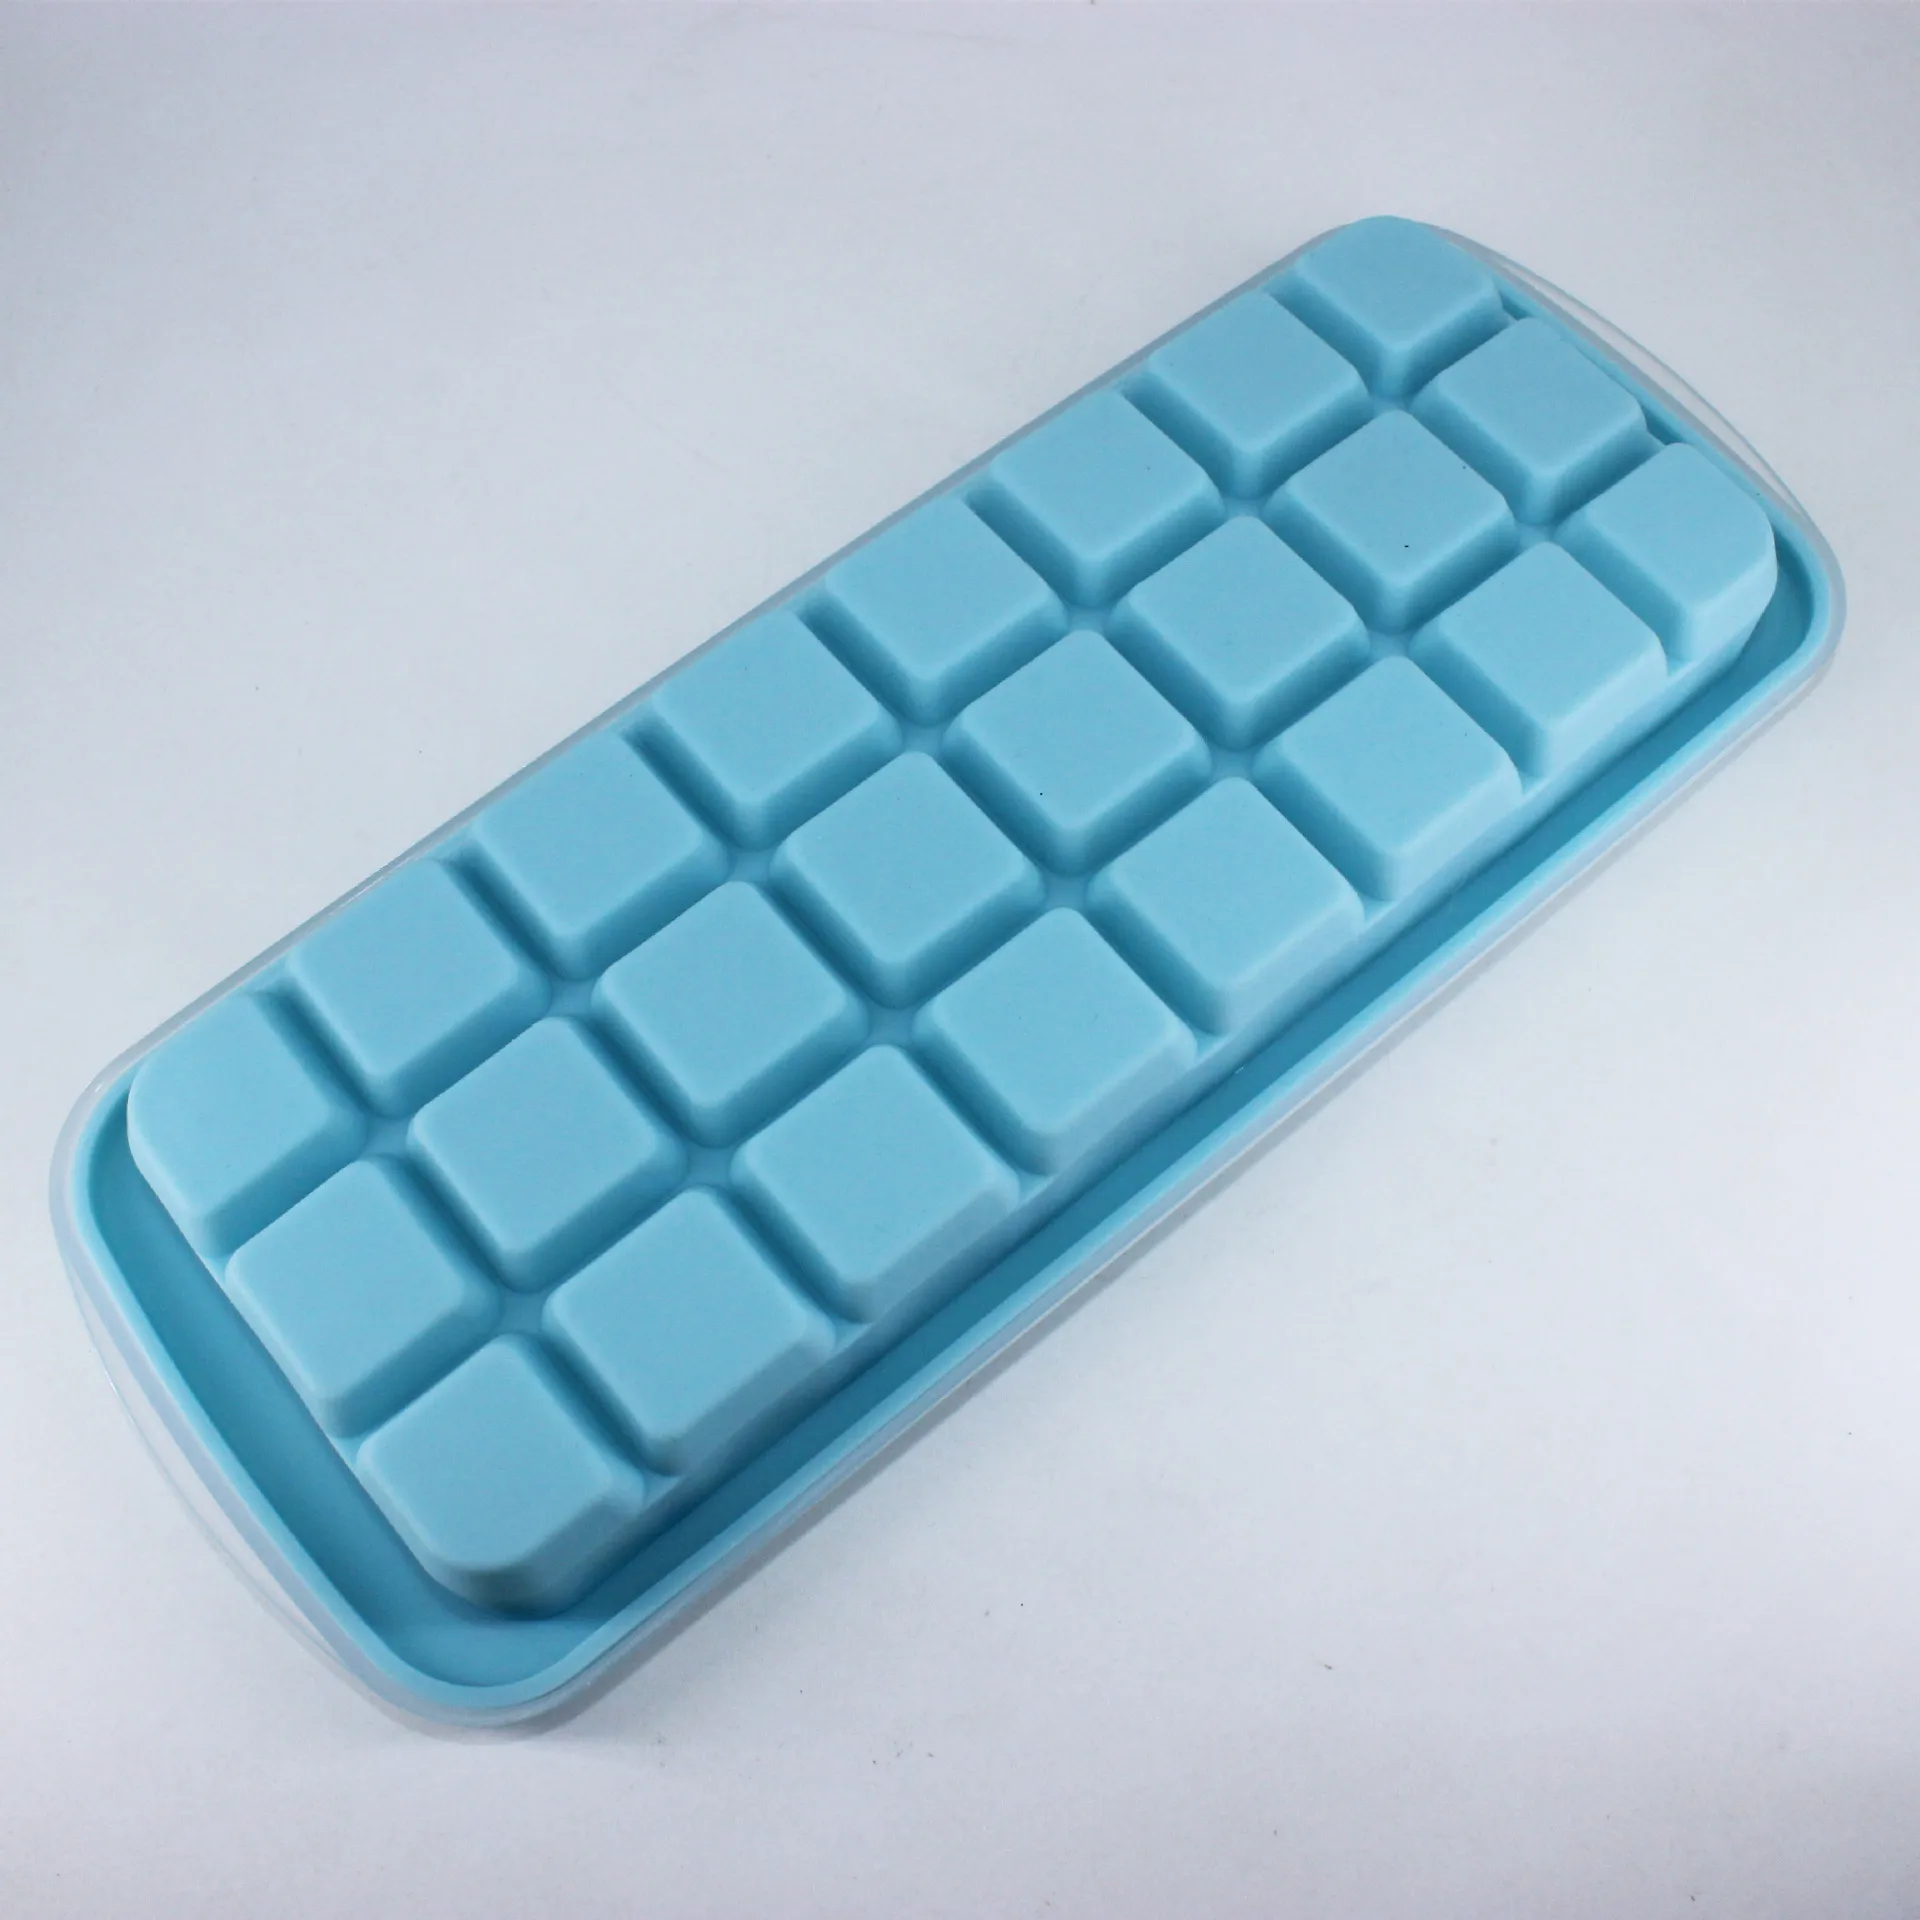 24 Сетки форма для приготовления льда квадратной формы силиконовый поддон для фруктов Бар мороженое эскимо инструменты кухонные аксессуары